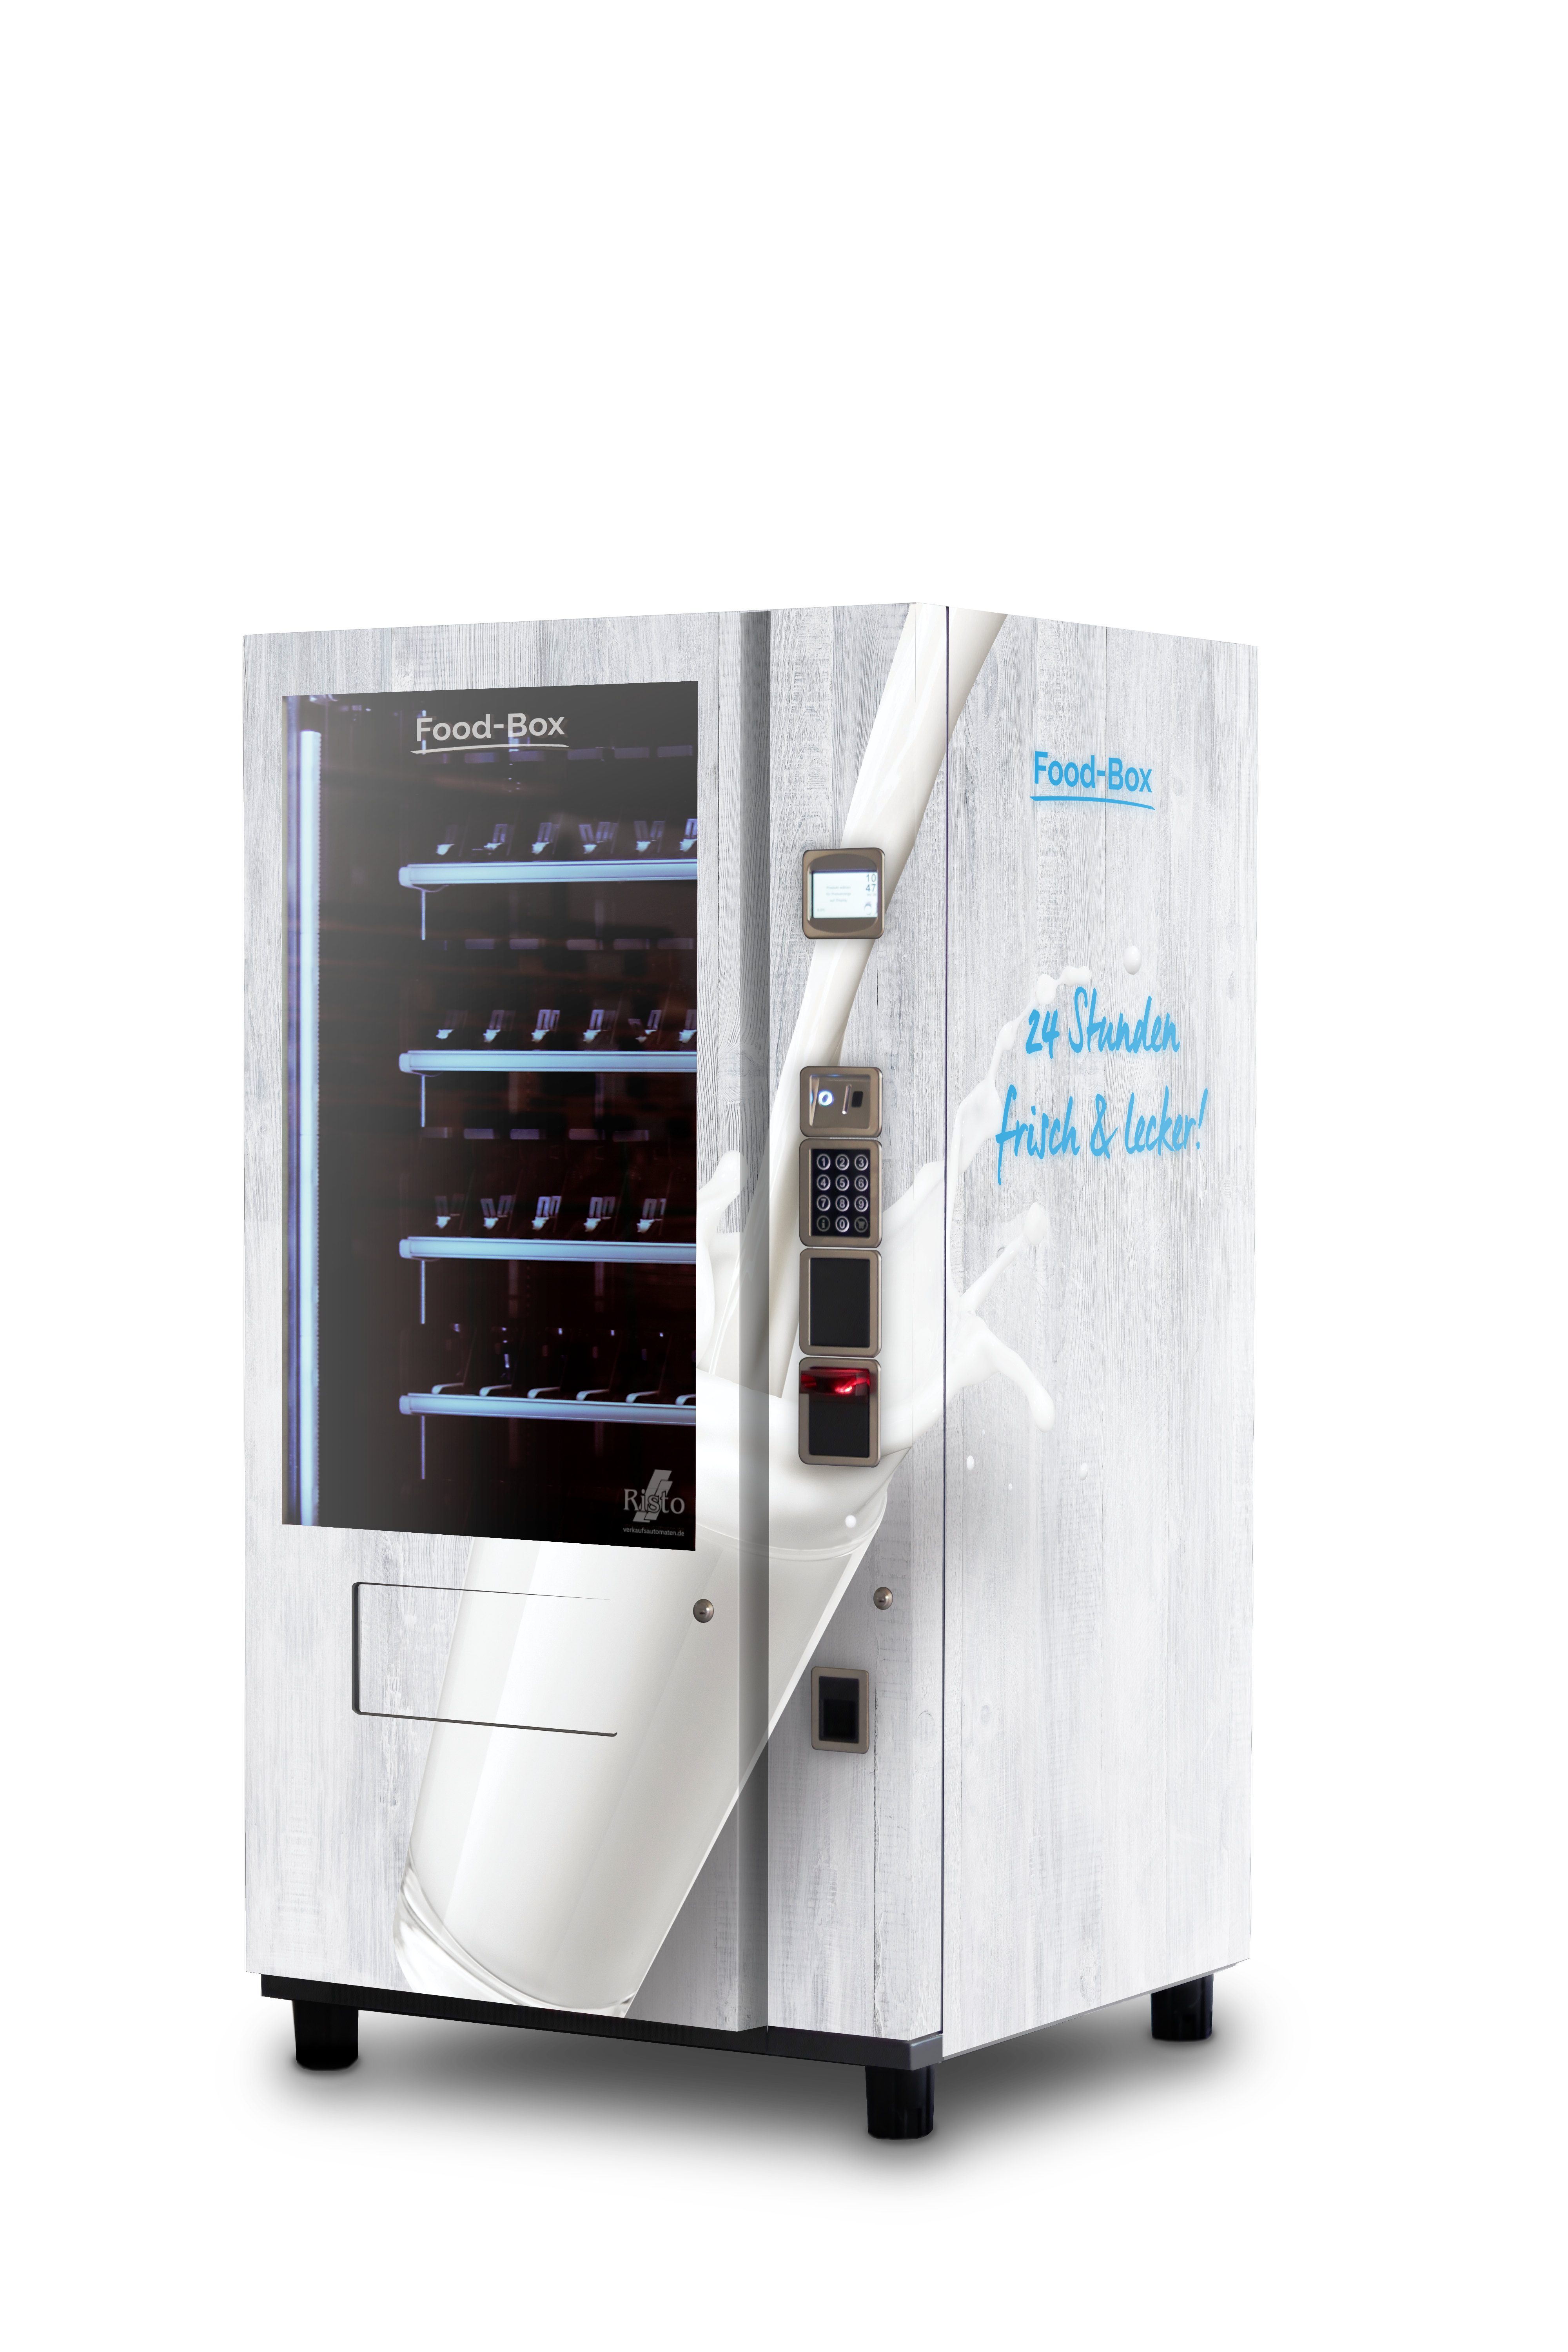 Automaten für Getränke